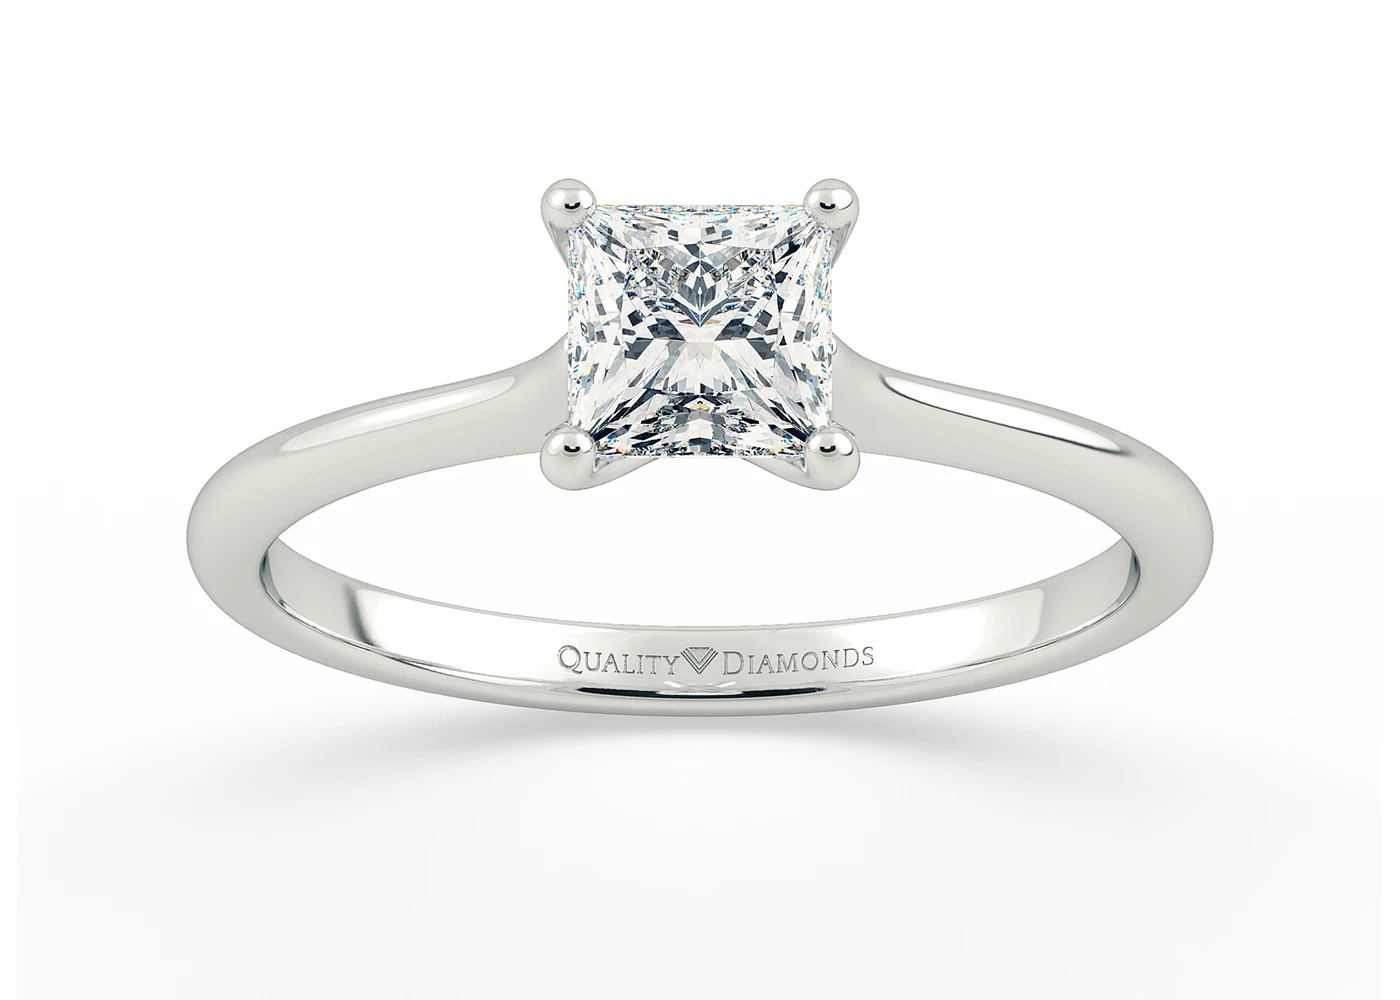 Princess Adamas Diamond Ring in 9K White Gold